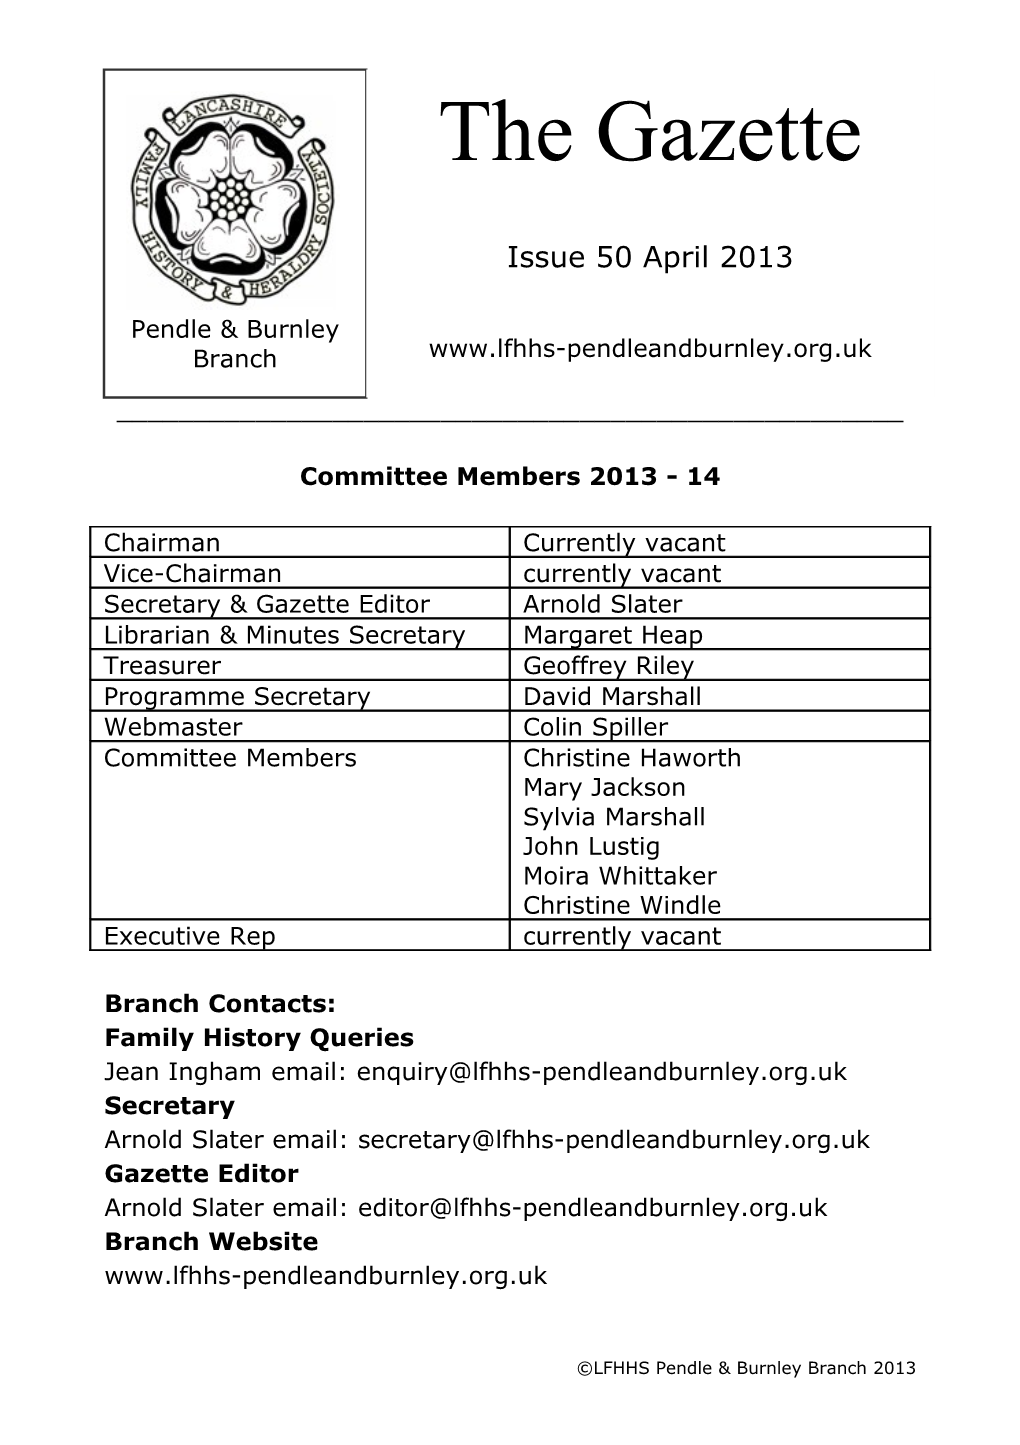 Committee Members 2013 - 14